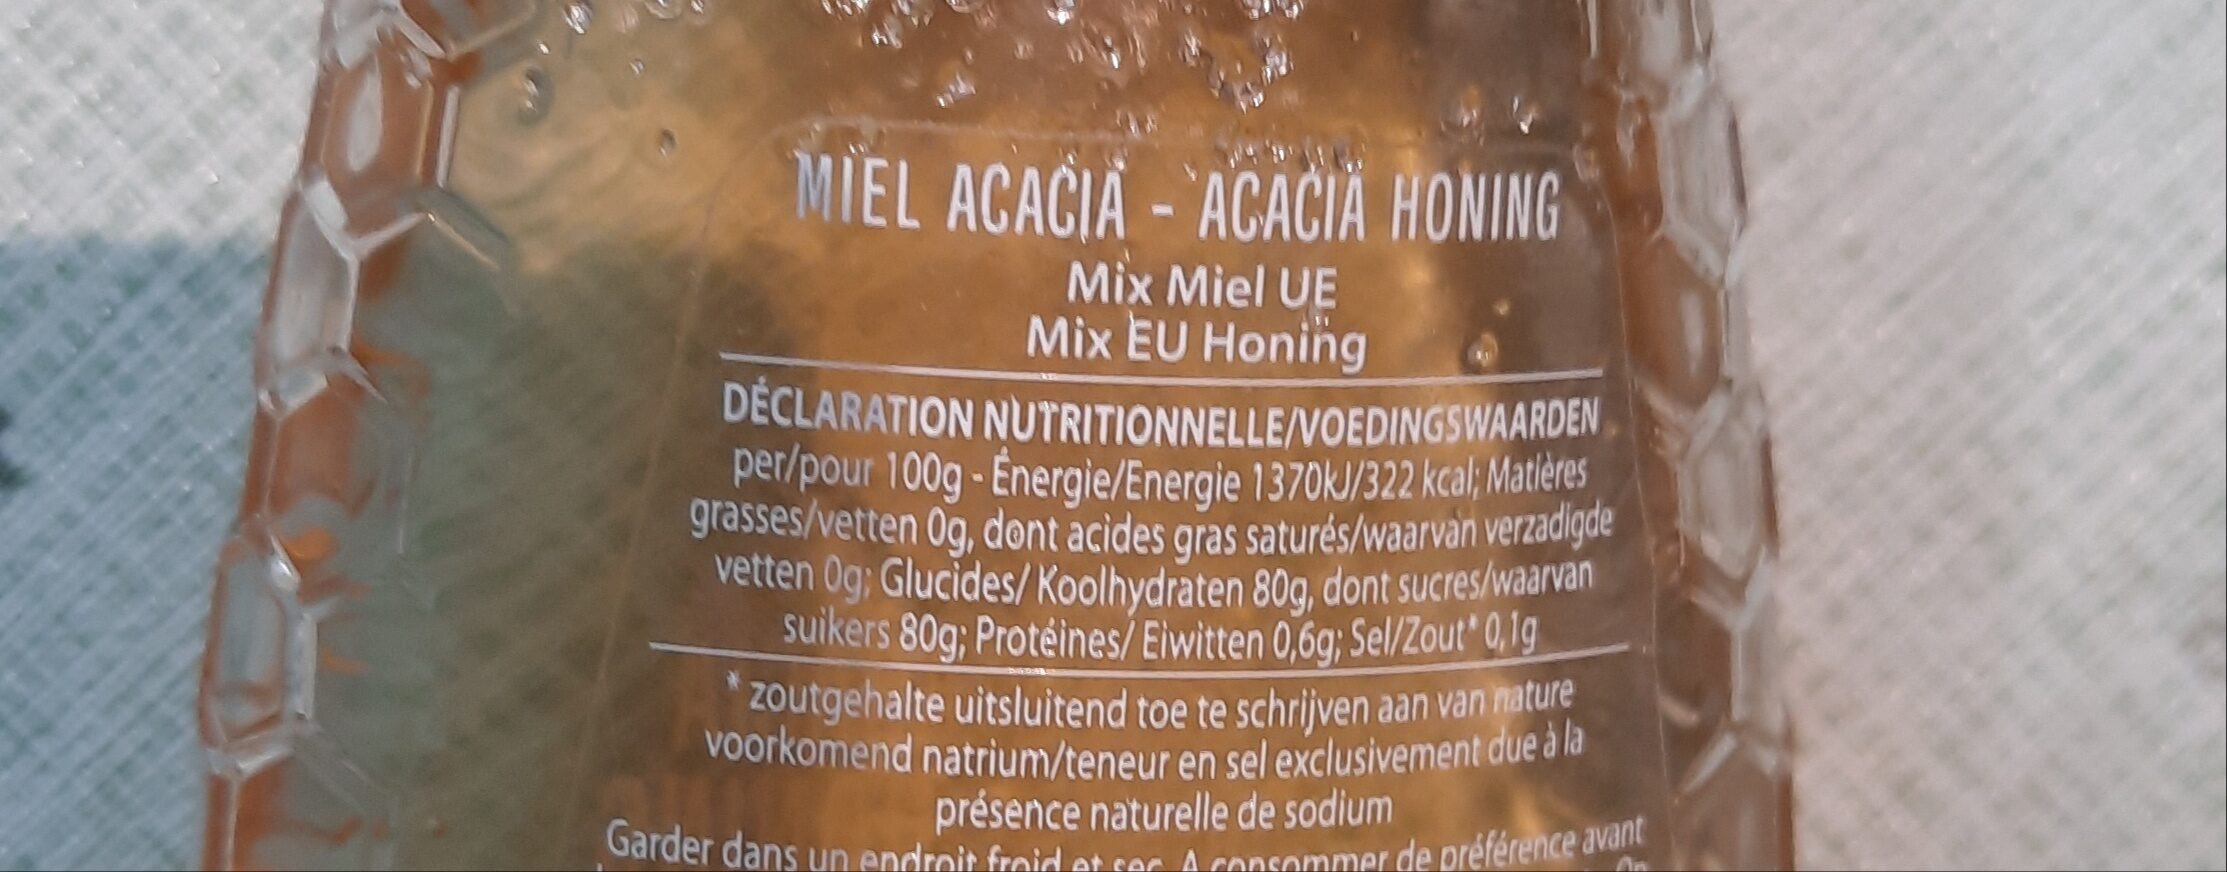 miel acacia - Ingrediënten - fr